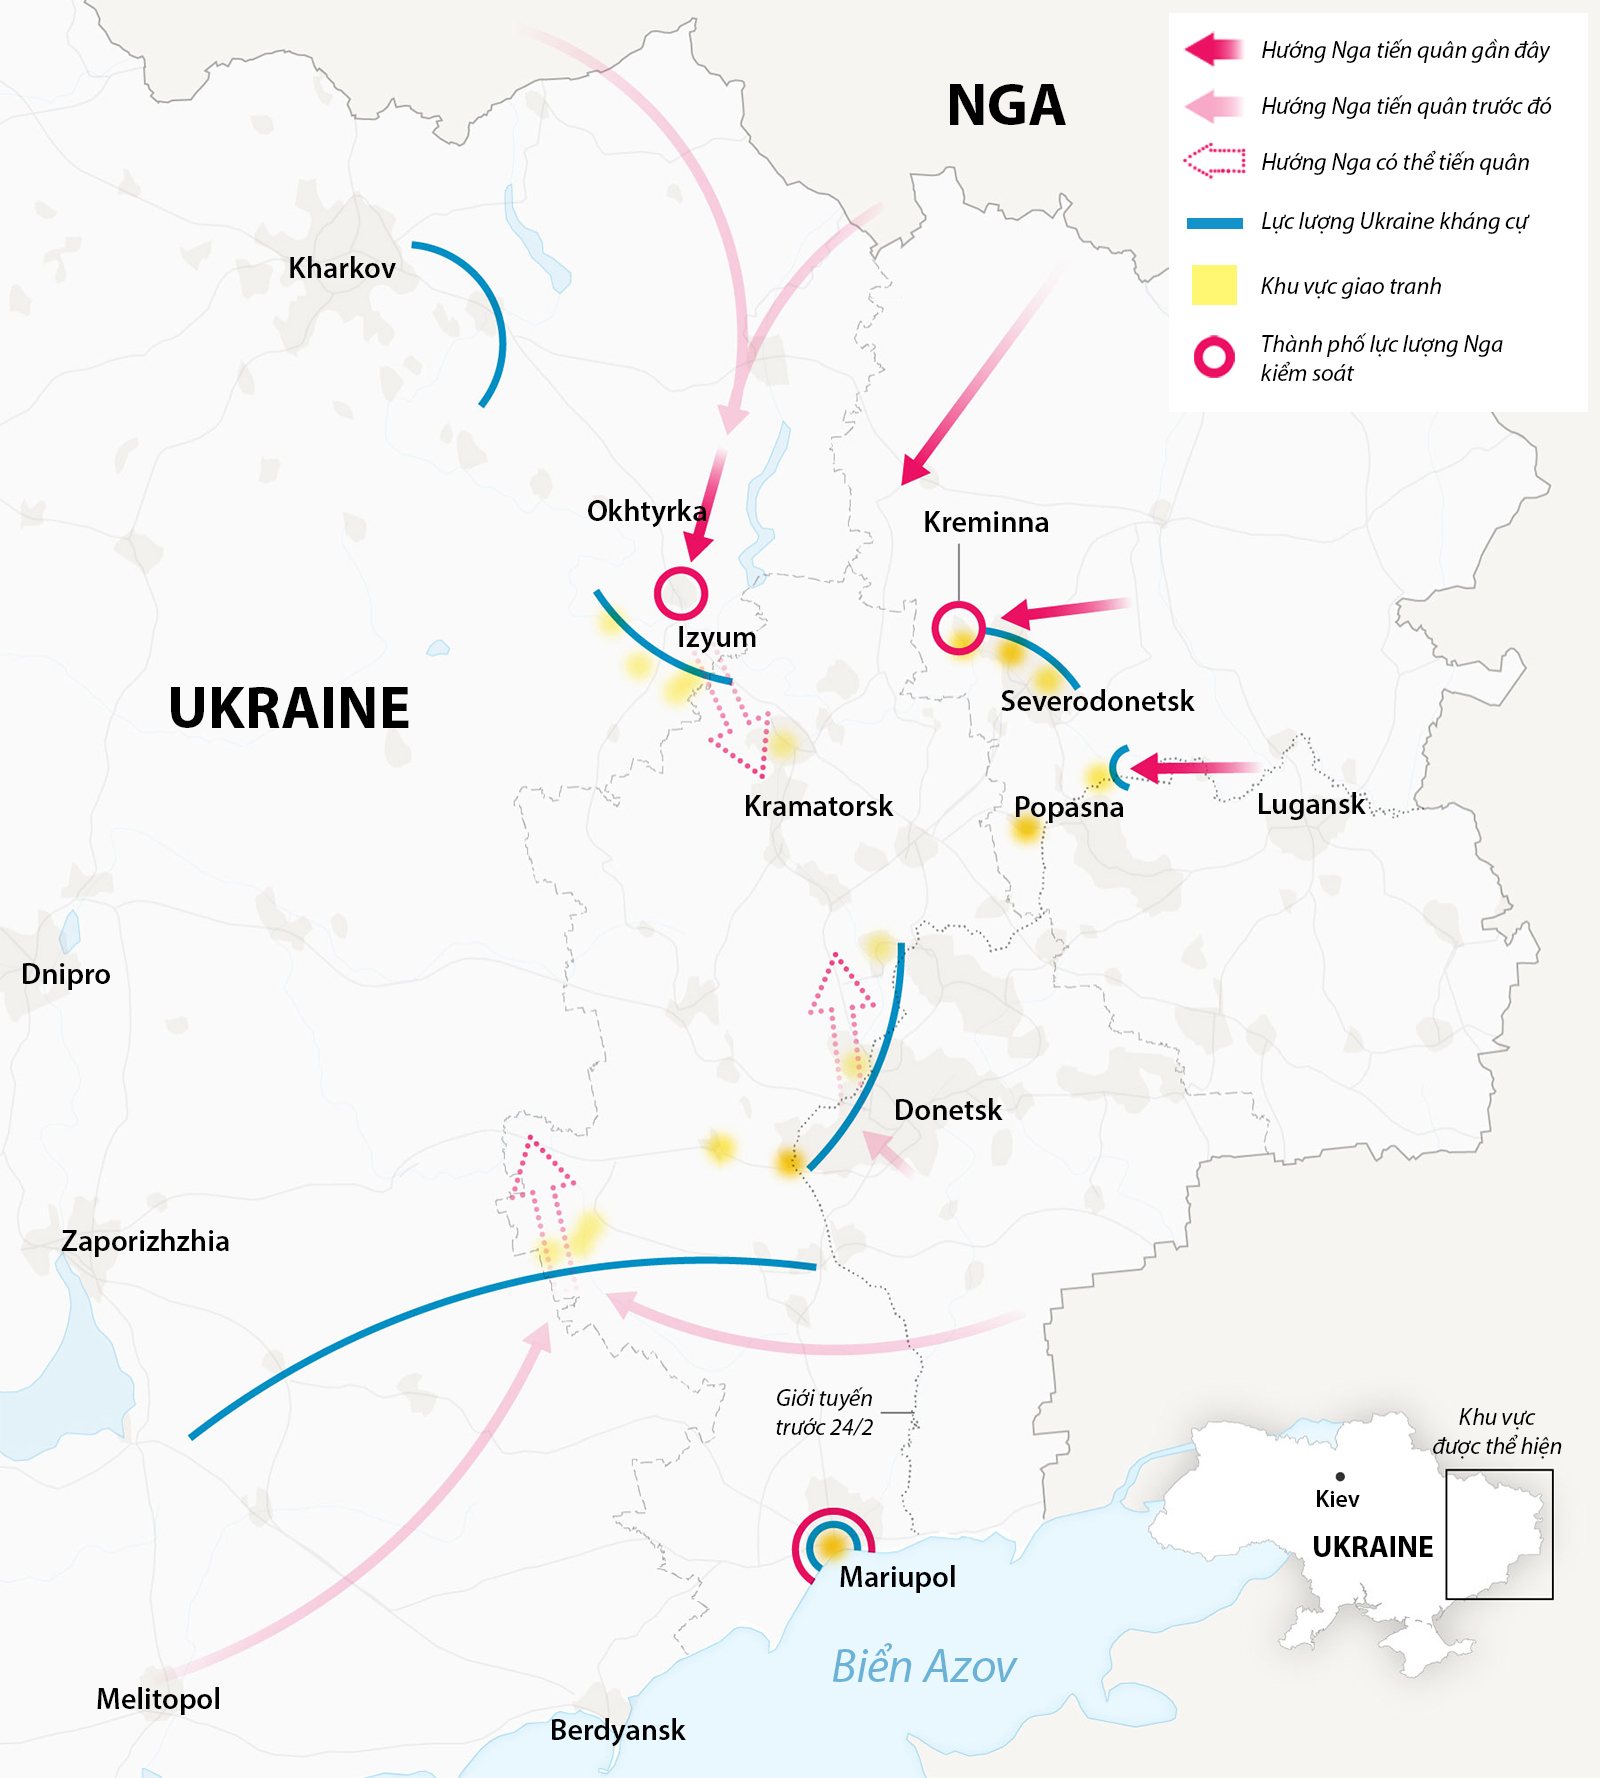 Hướng thọc sâu của Nga ở miền đông Ukraine. Bấm vào hình để xem chi tiết.